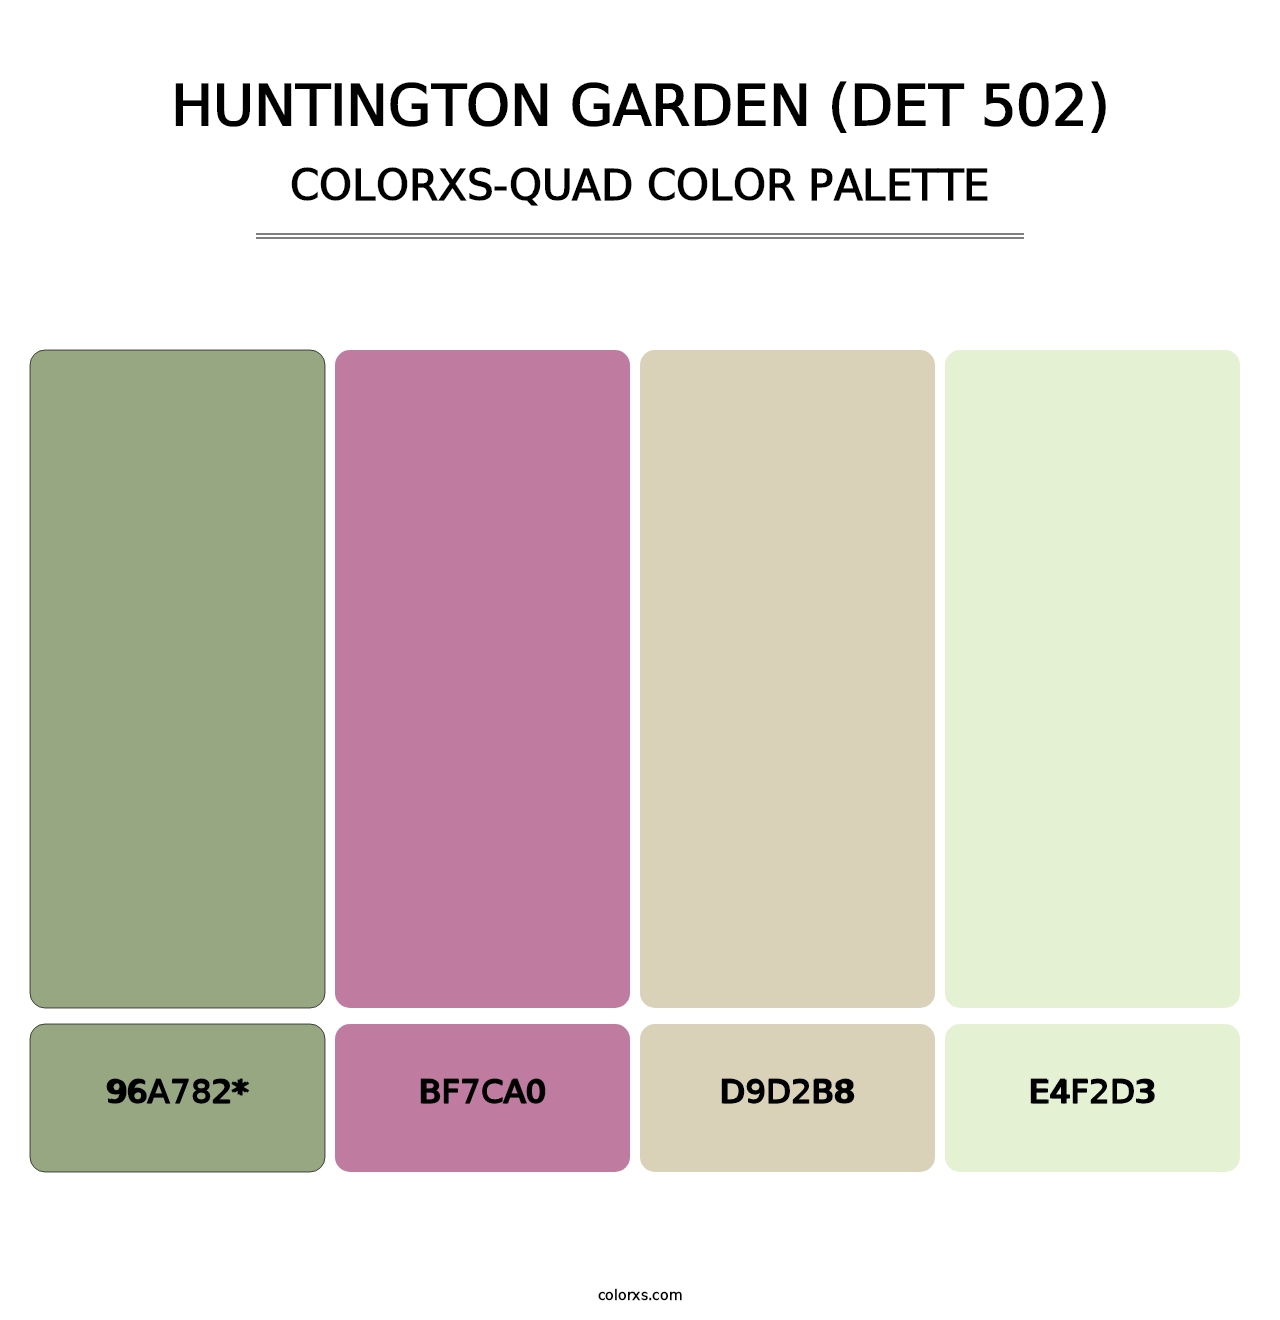 Huntington Garden (DET 502) - Colorxs Quad Palette